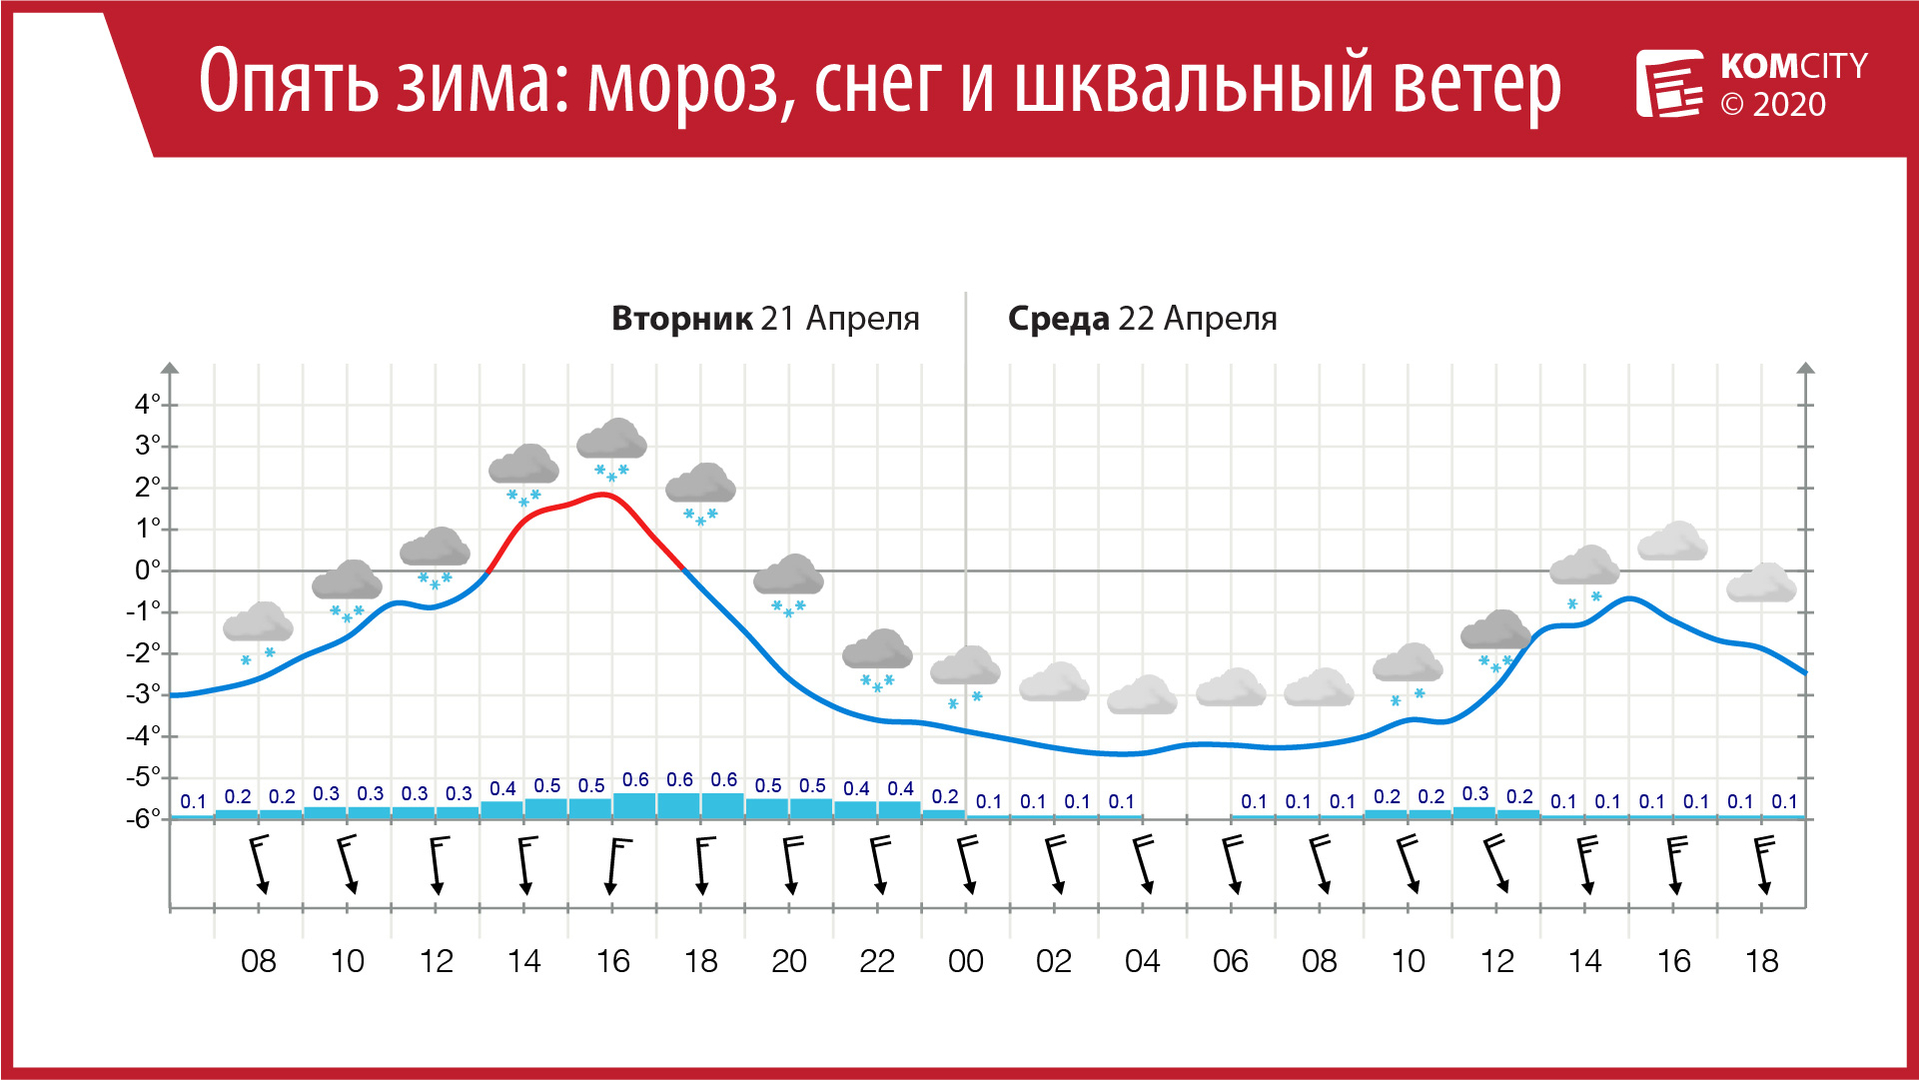 Зима возвращается 2: Смотрите завтра на всех улицах Комсомольска-на-Амуре — мороз, снег и шквальный ветер